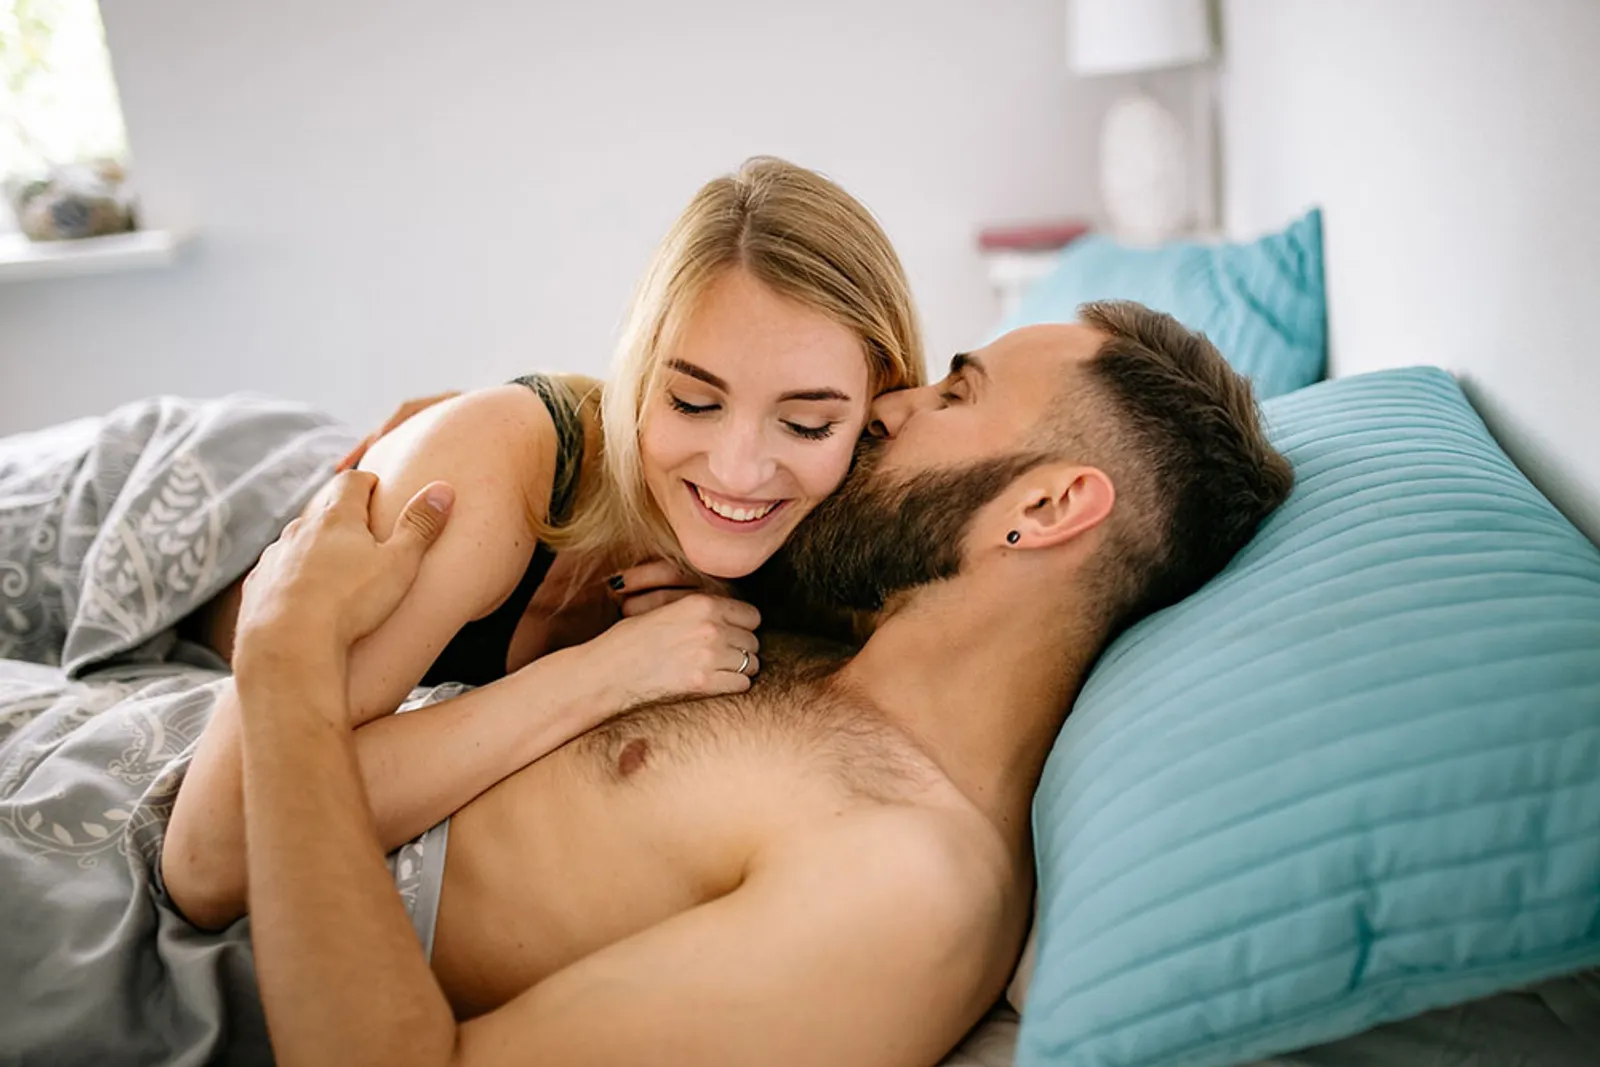 6 Cara Orgasme Bersamaan, Jika Pasangan Tipe yang Cepat “Selesai”